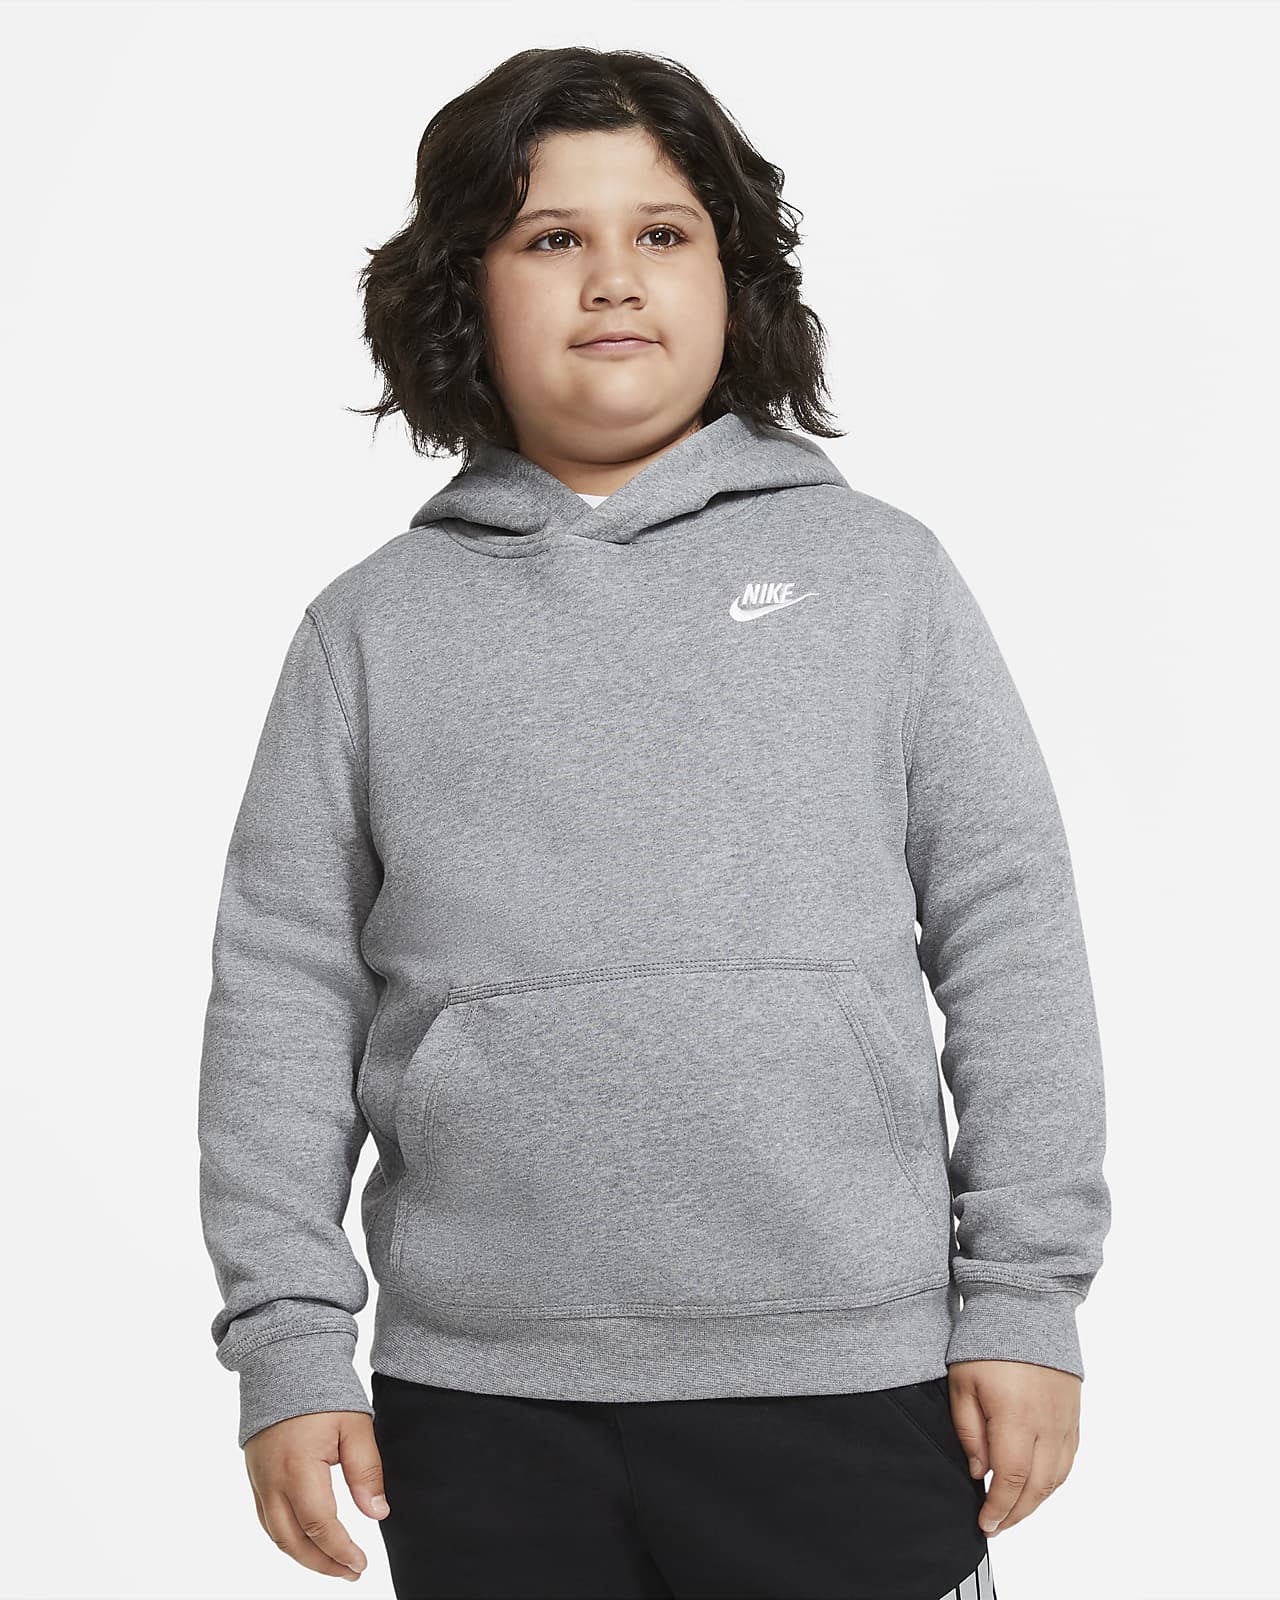 Sportswear AT (erweiterte Nike Fleece Größe). Nike Club Kinder Hoodie (Jungen) ältere für